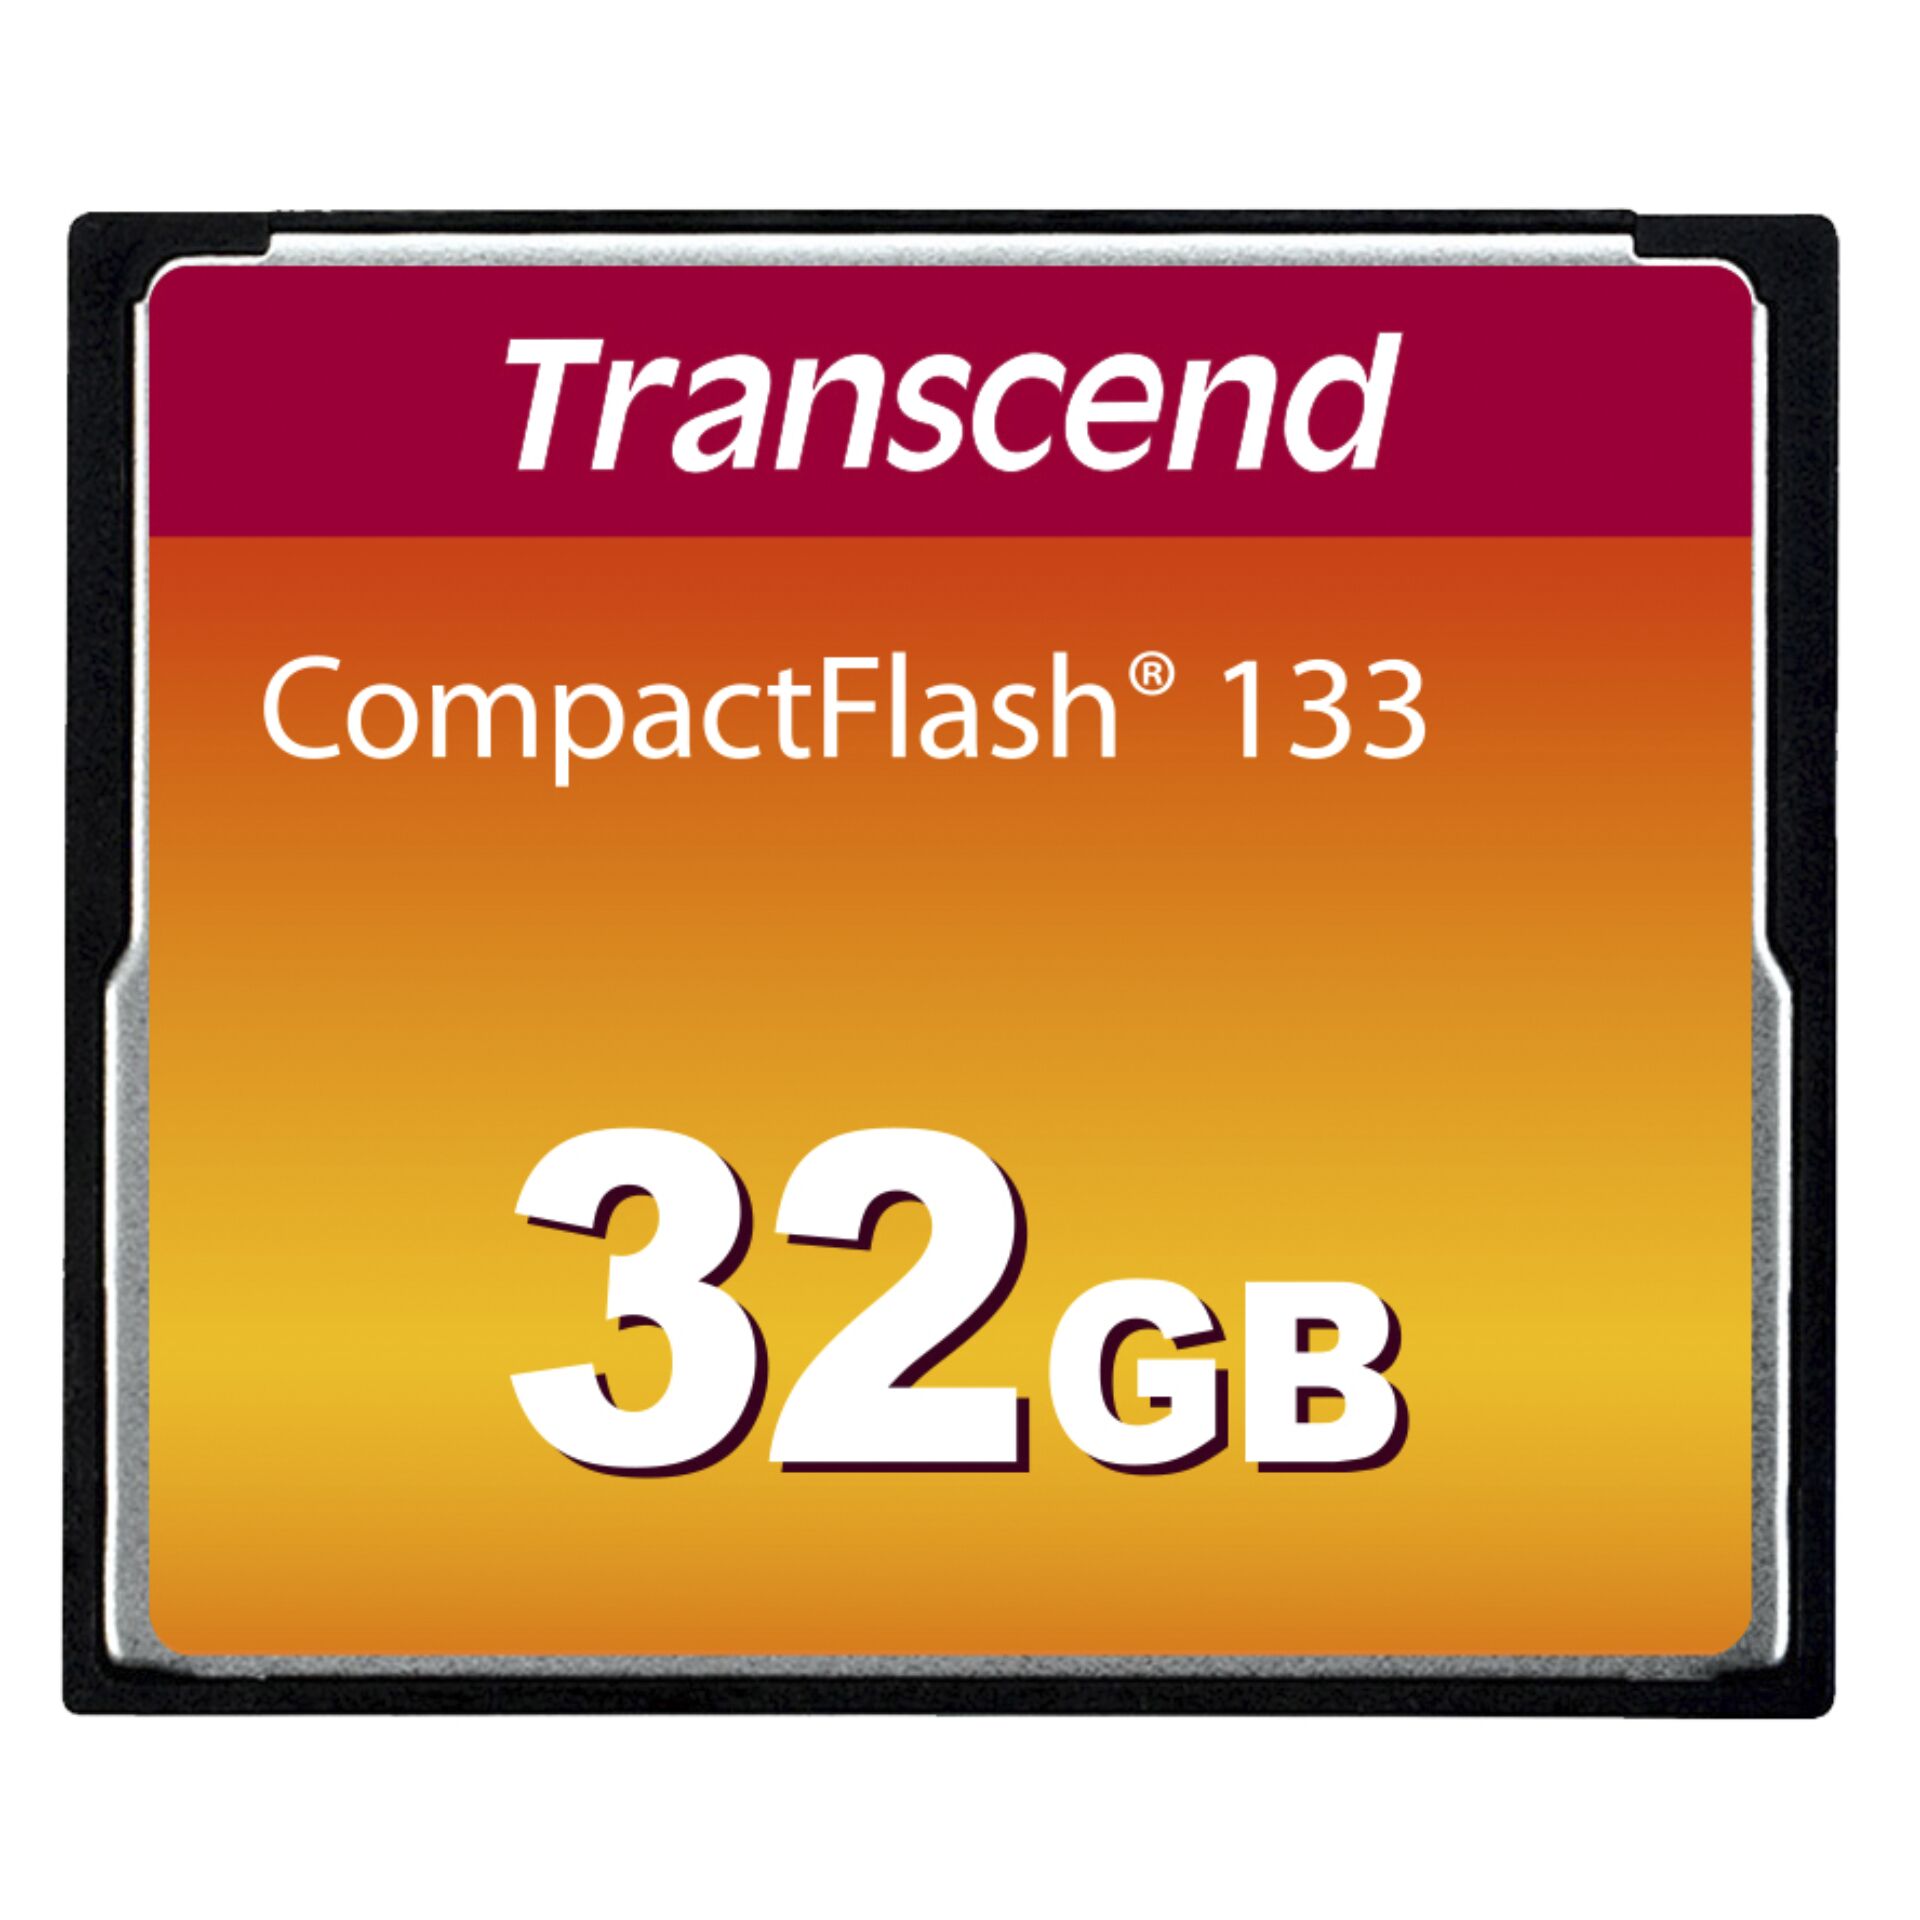 32 GB Transcend CompactFlash Card 133x Speicherkarte 